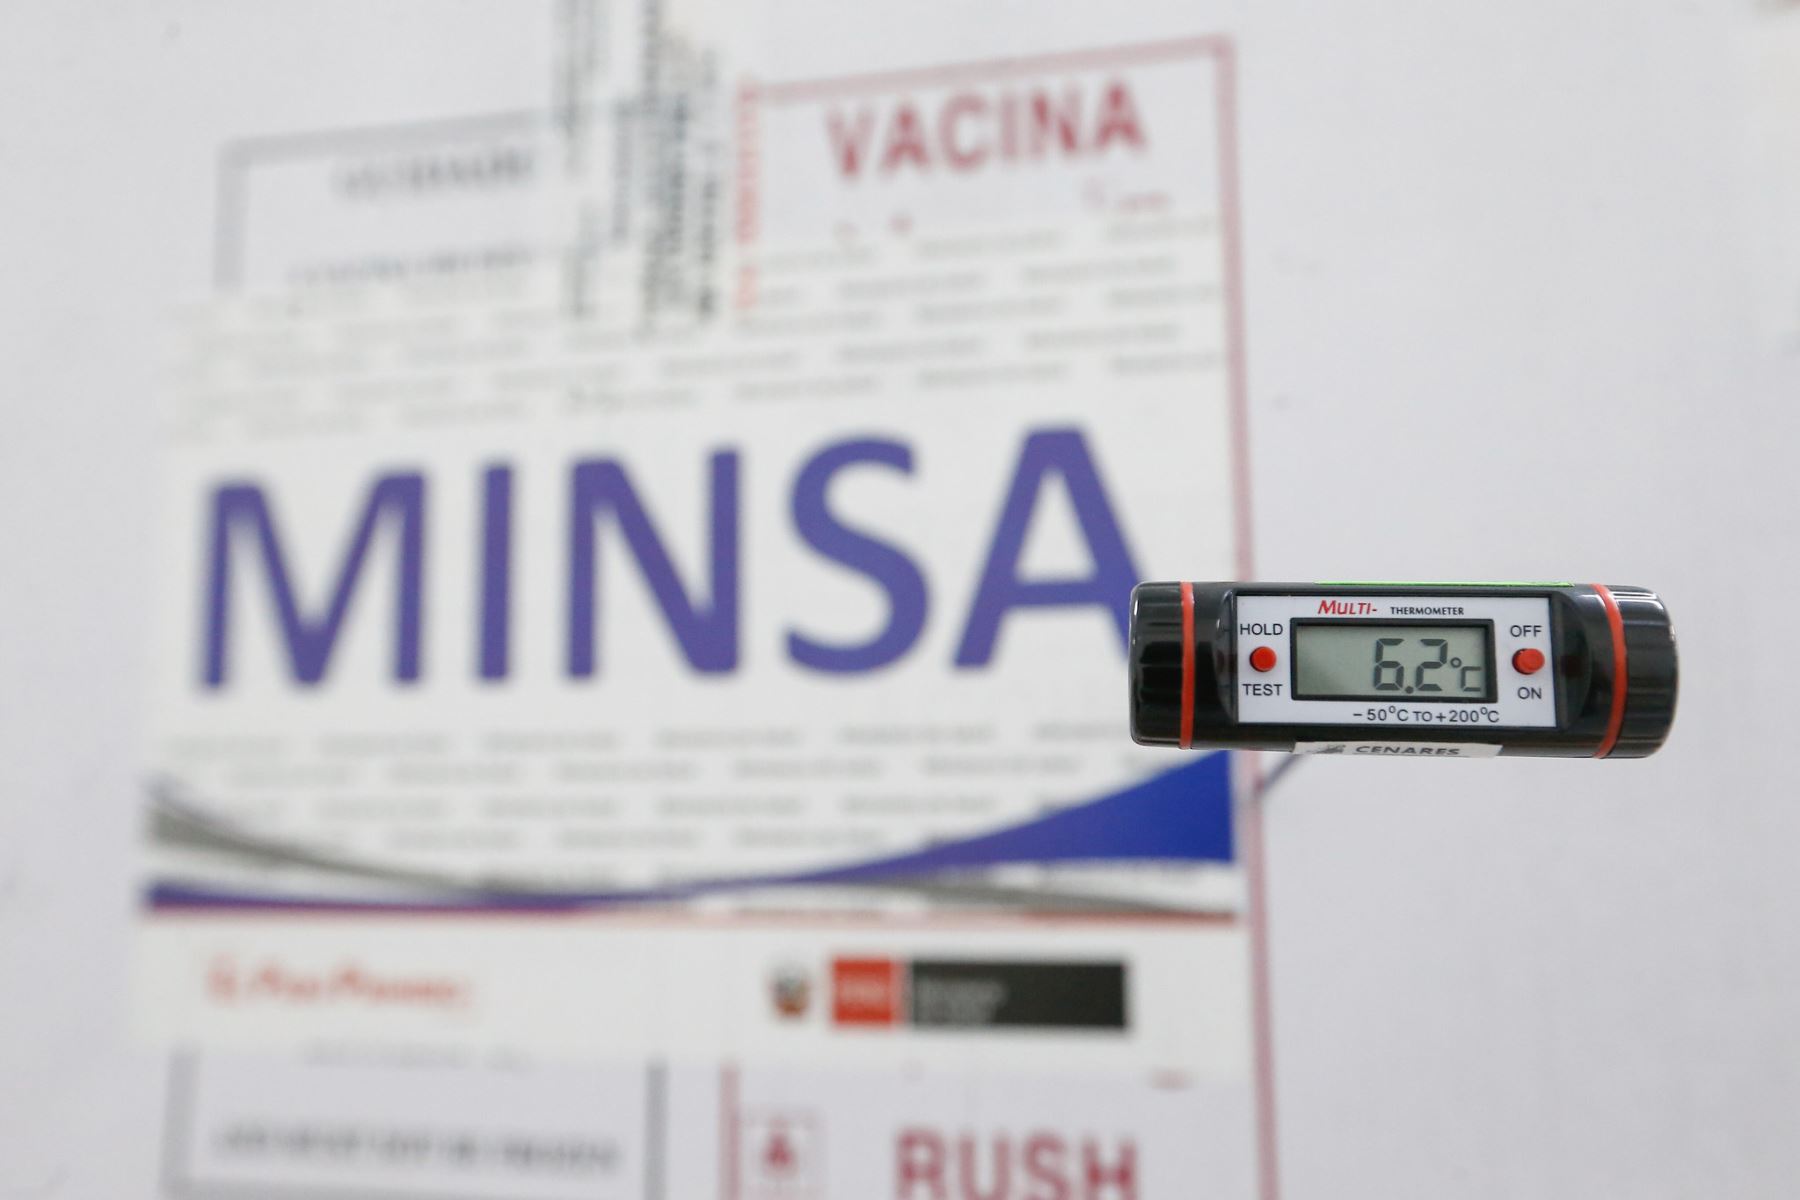 Vacunas del laboratorio Sinopharm están listas para su distribución. Foto: Minsa